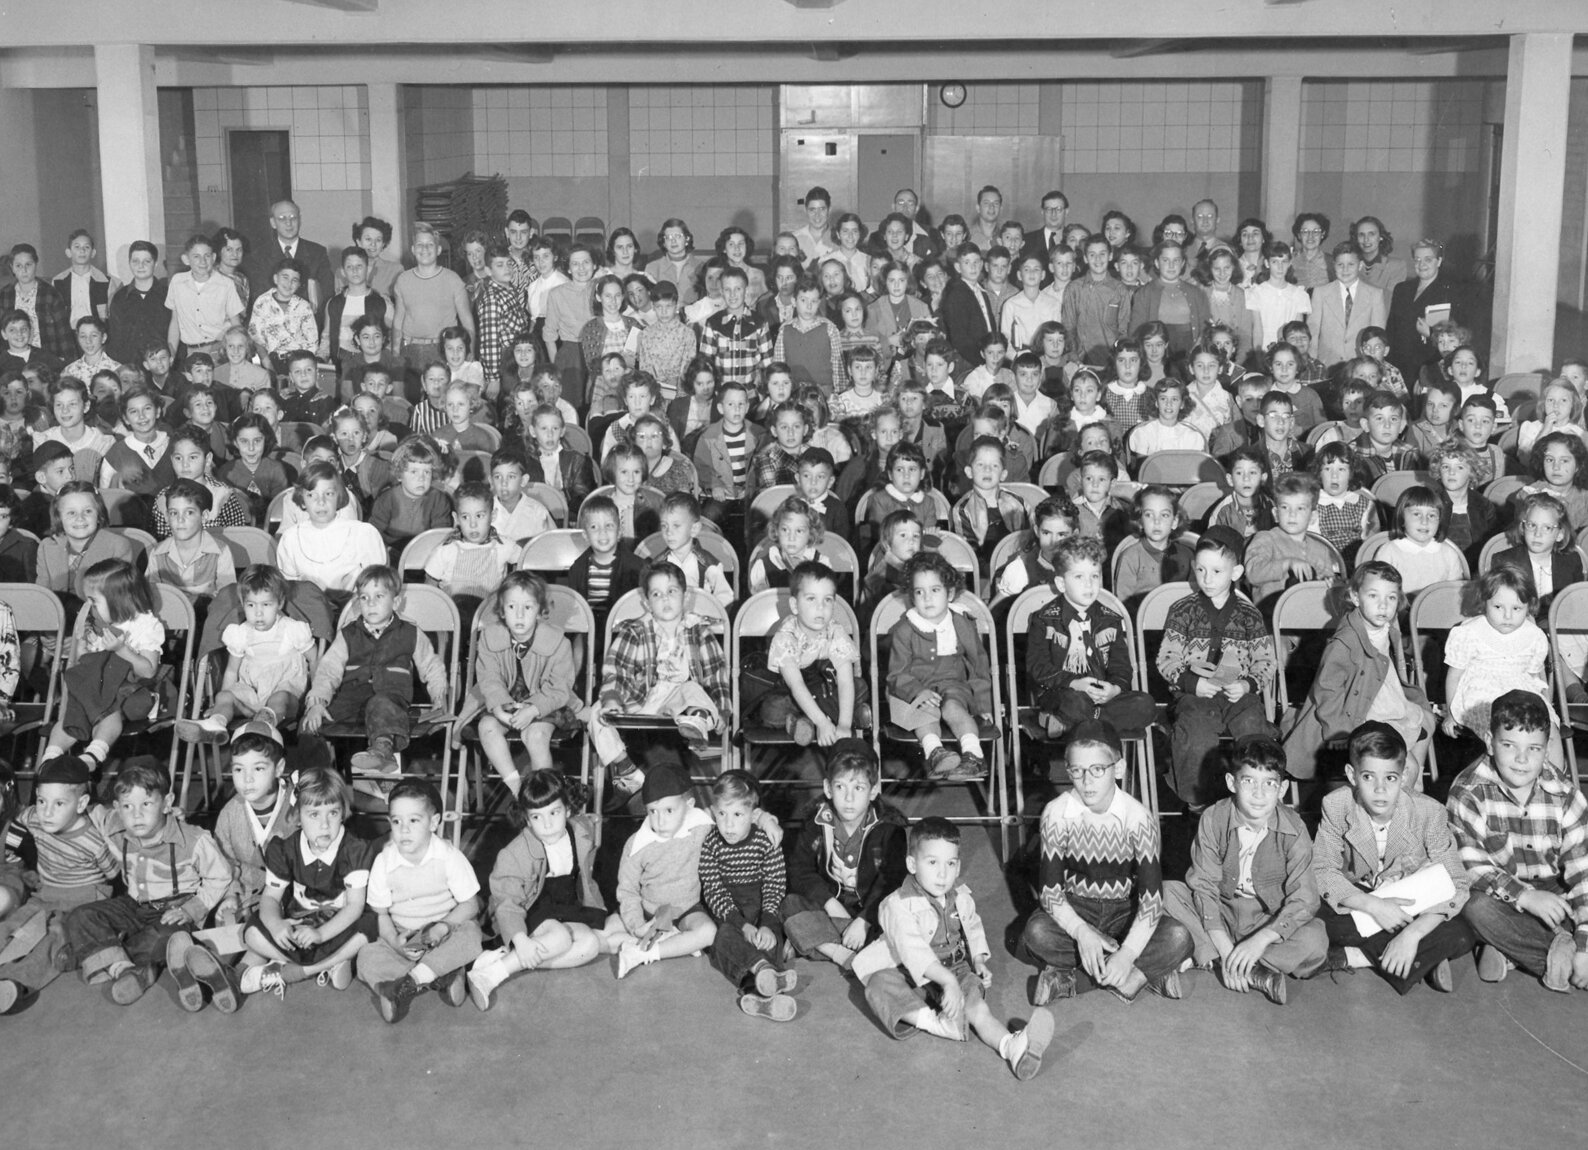 Beth El Sunday school convocation in 1951